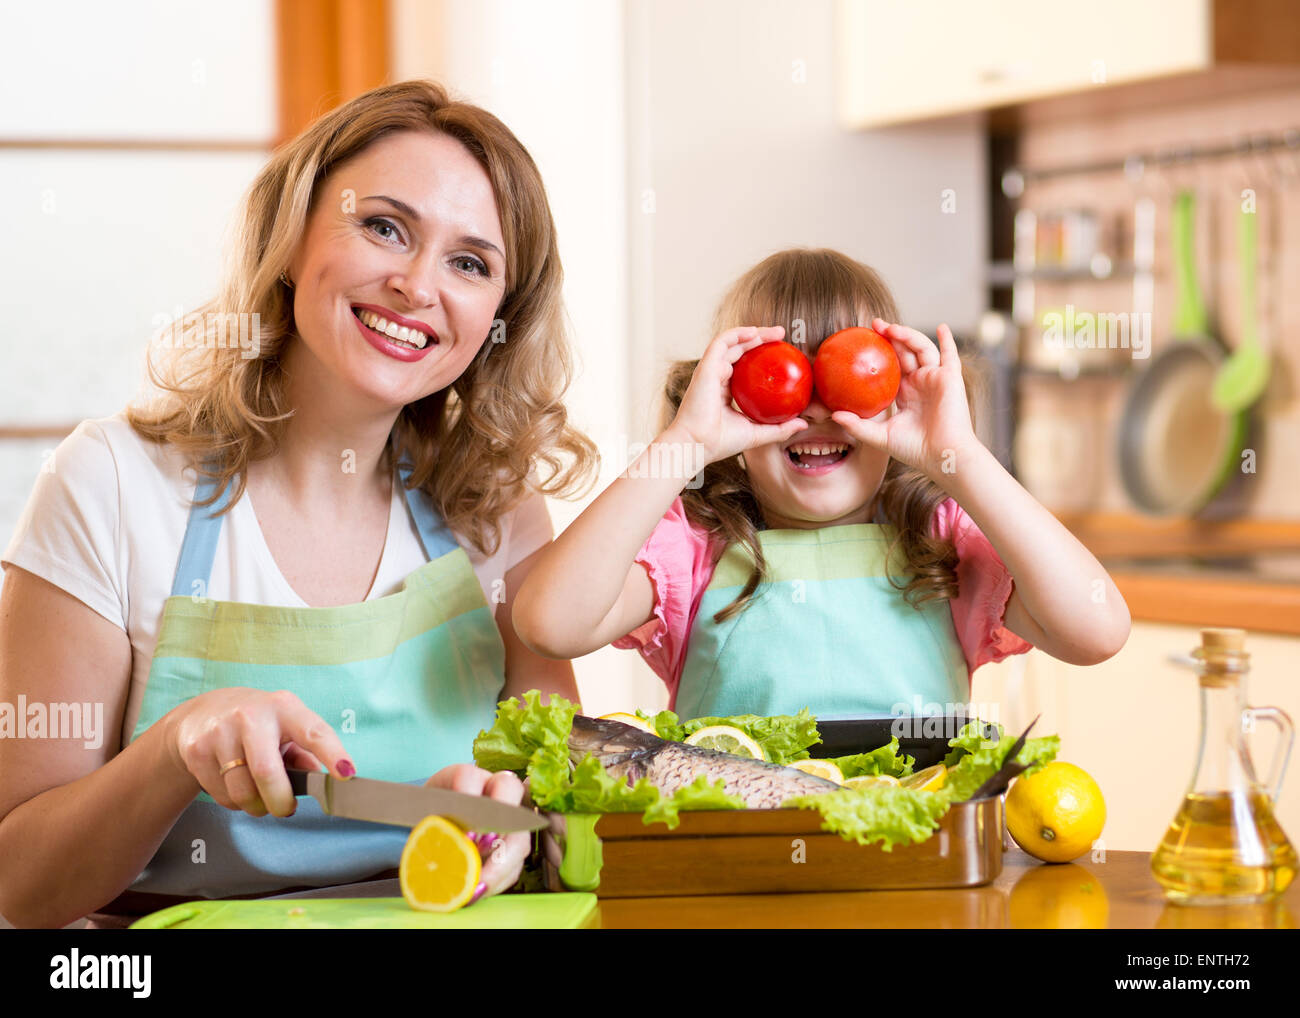 Mutter und Kind viel Spaß beim Kochen in der Küche Stockfoto